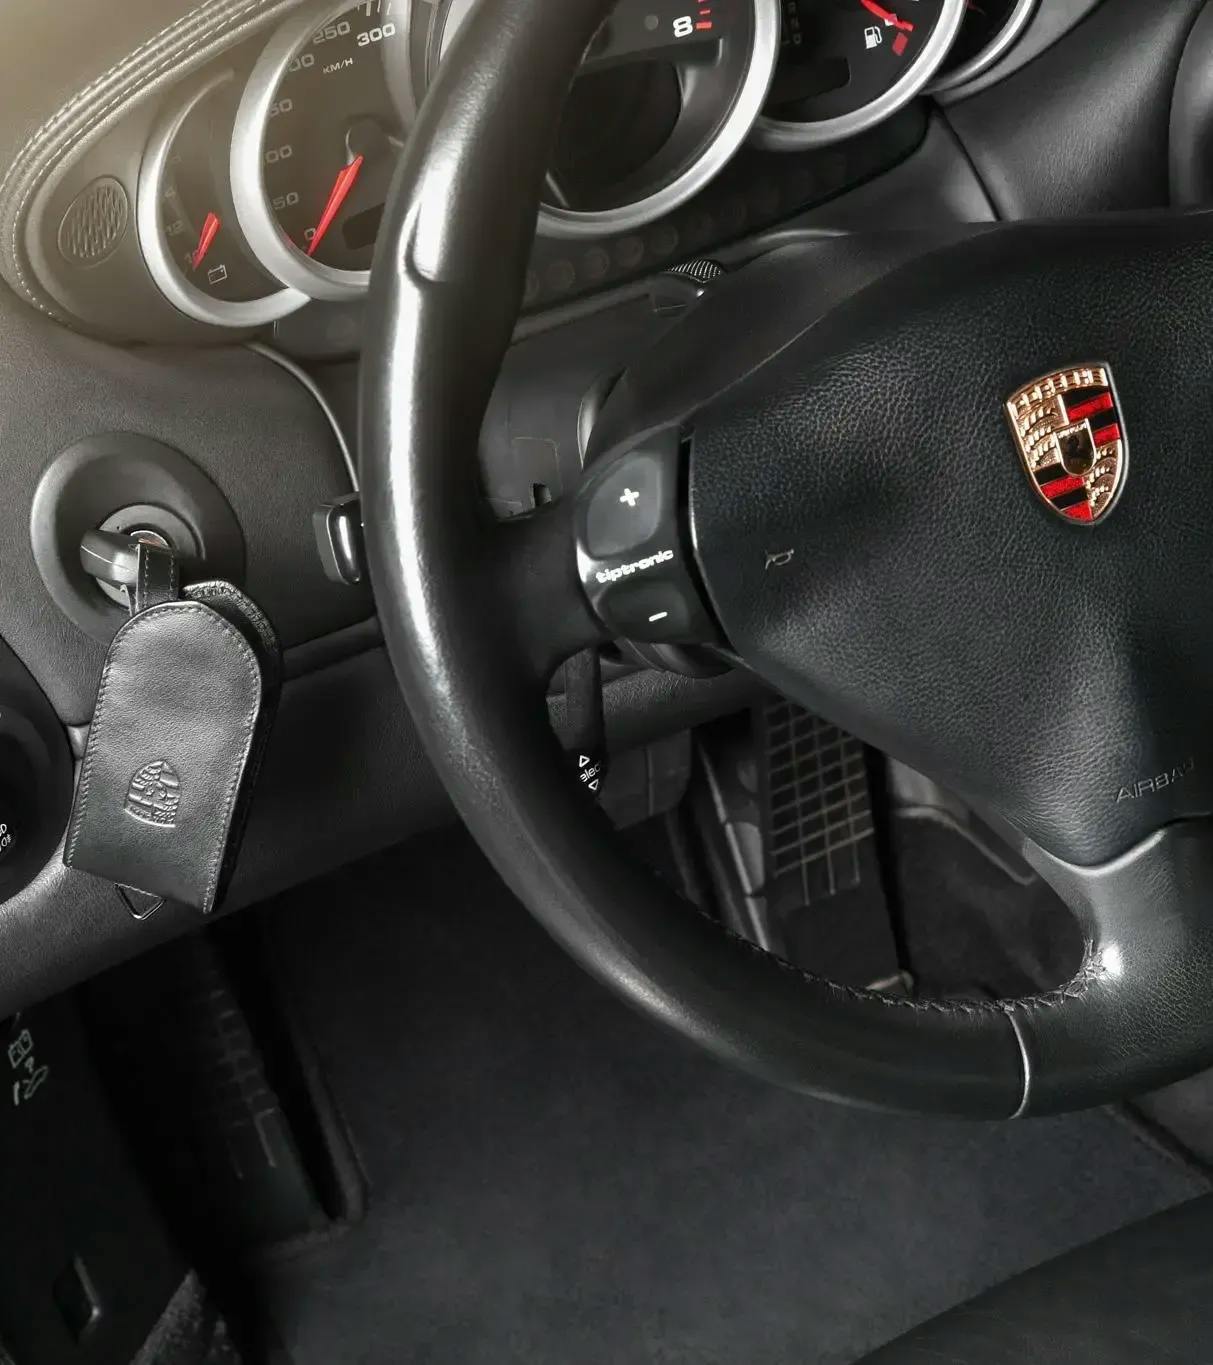 Porte-clé Porsche Ferrari bmw car voiture luxe course Amg Carrera Ref 9  Noir en Simili Cuir Coque en folie - Porte clef - Achat & prix